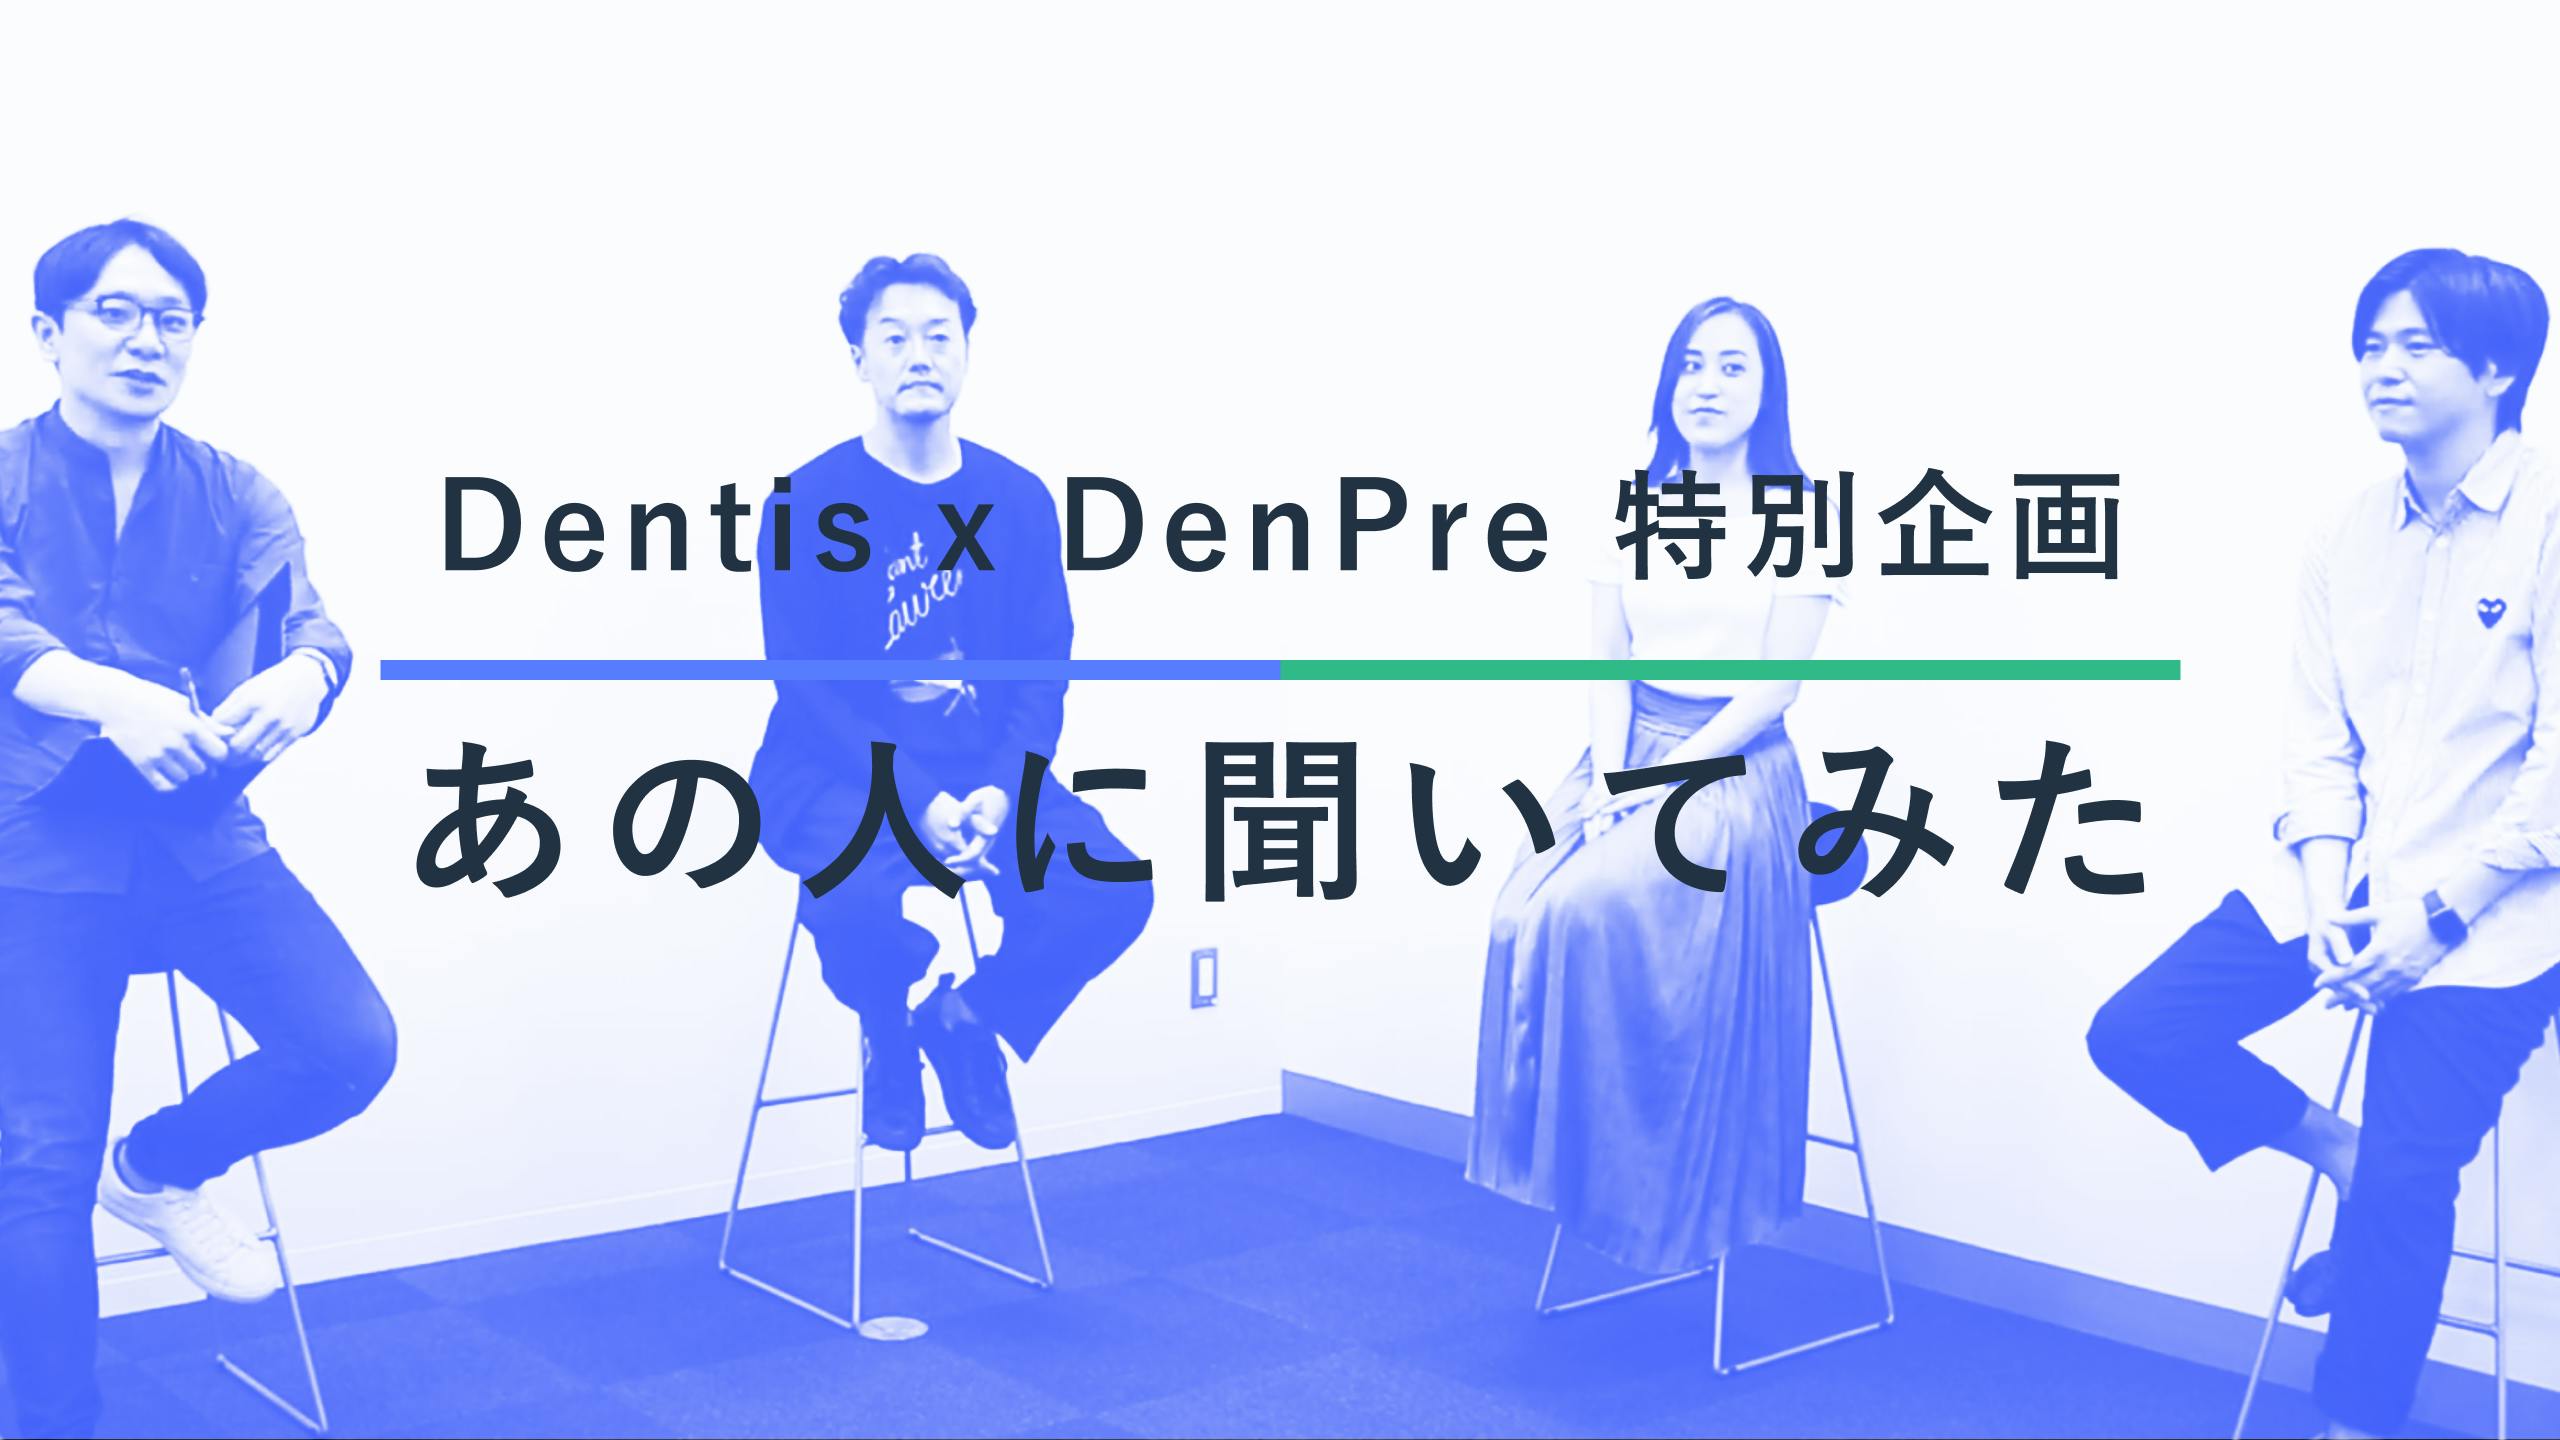 新コンテンツ「Dentis × DenPre 特別企画 〜あのひとに聞いてみた〜」を開始します